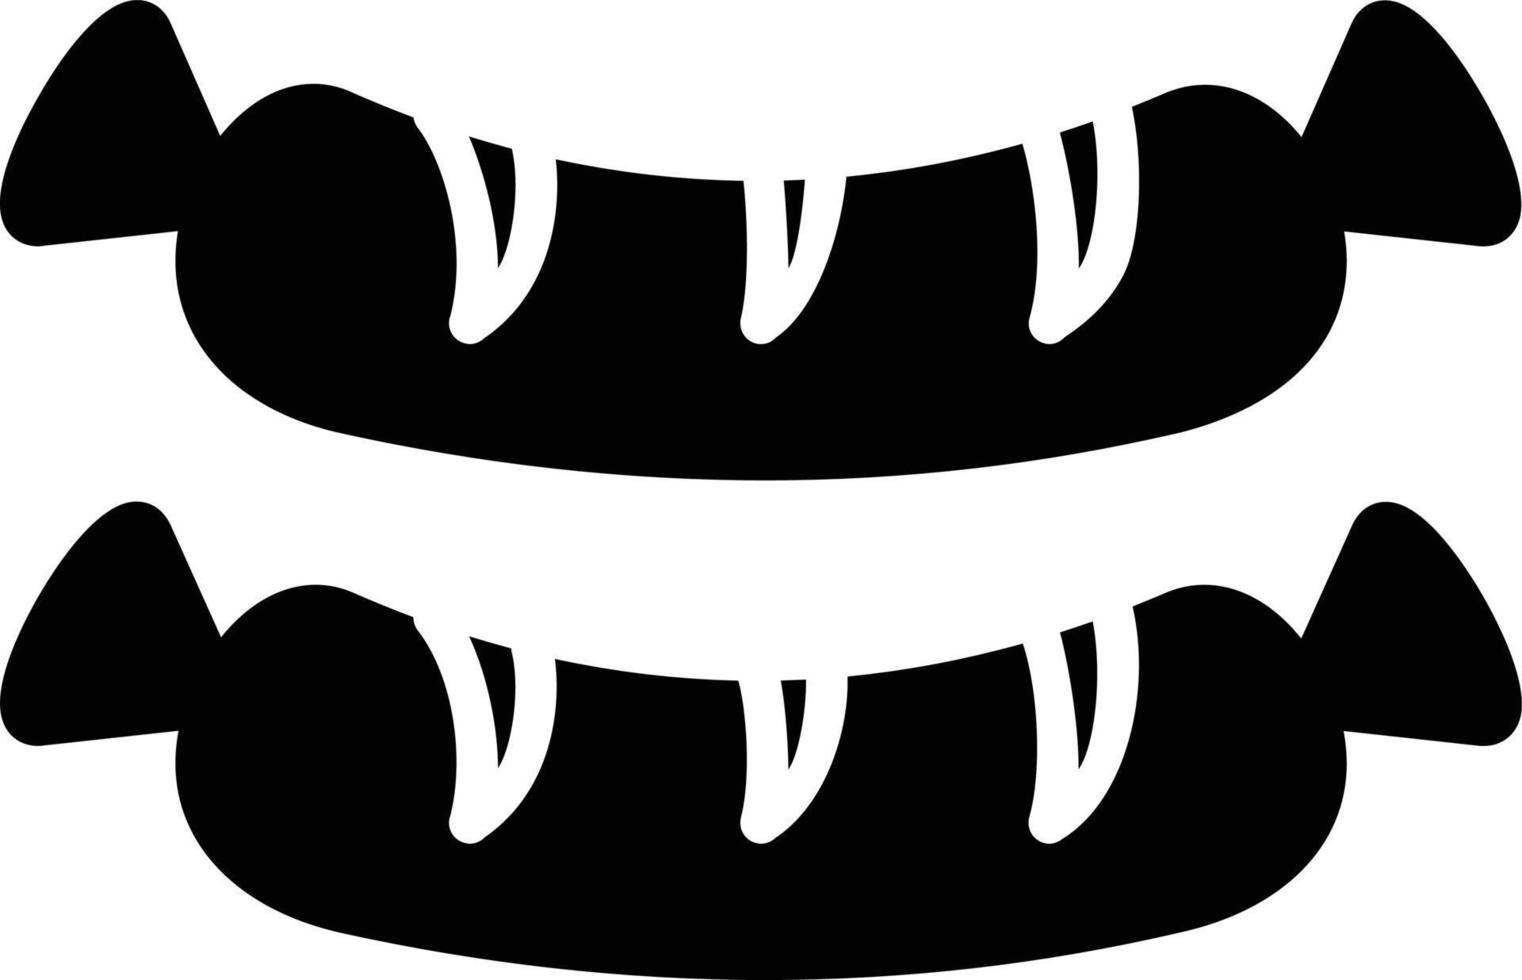 icona del glifo con salsiccia vettore